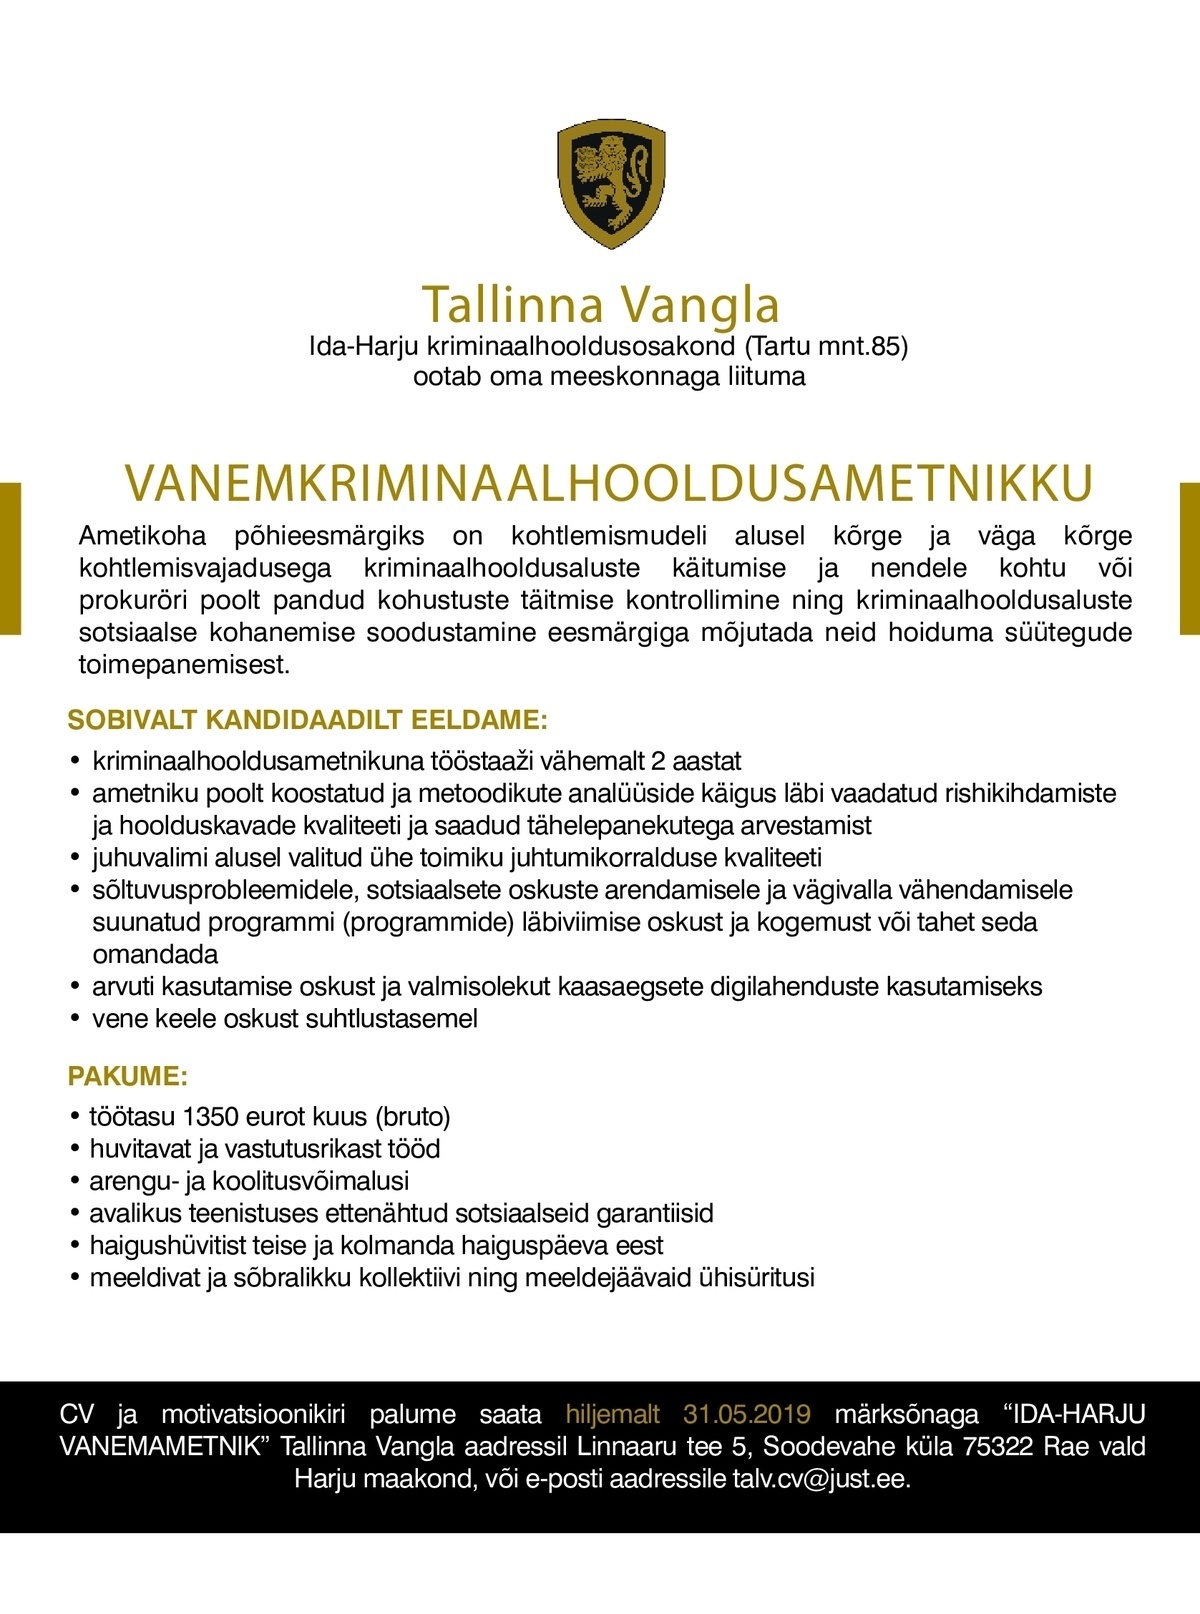 Tallinna Vangla Ida-Harju Vanemkriminaalhooldusametnik